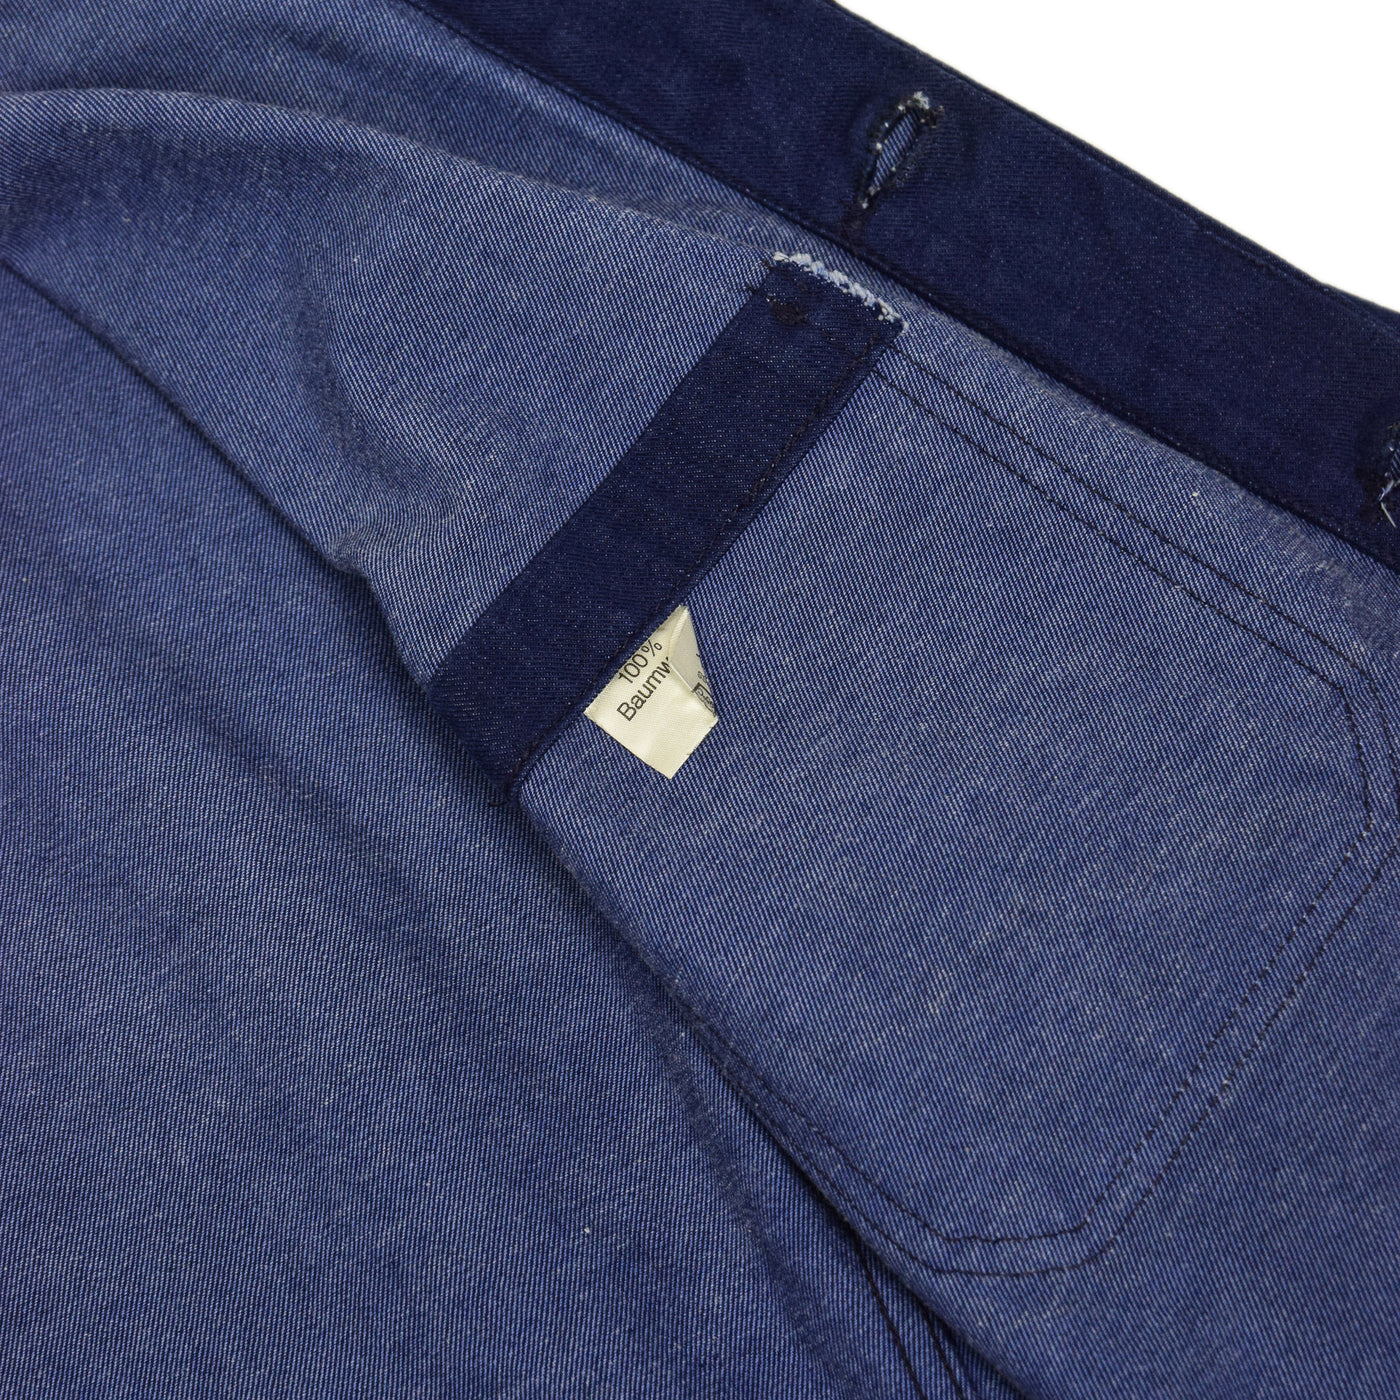 Vintage Indigo Blue French Style Denim Cotton Worker Chore Jacket M internal label